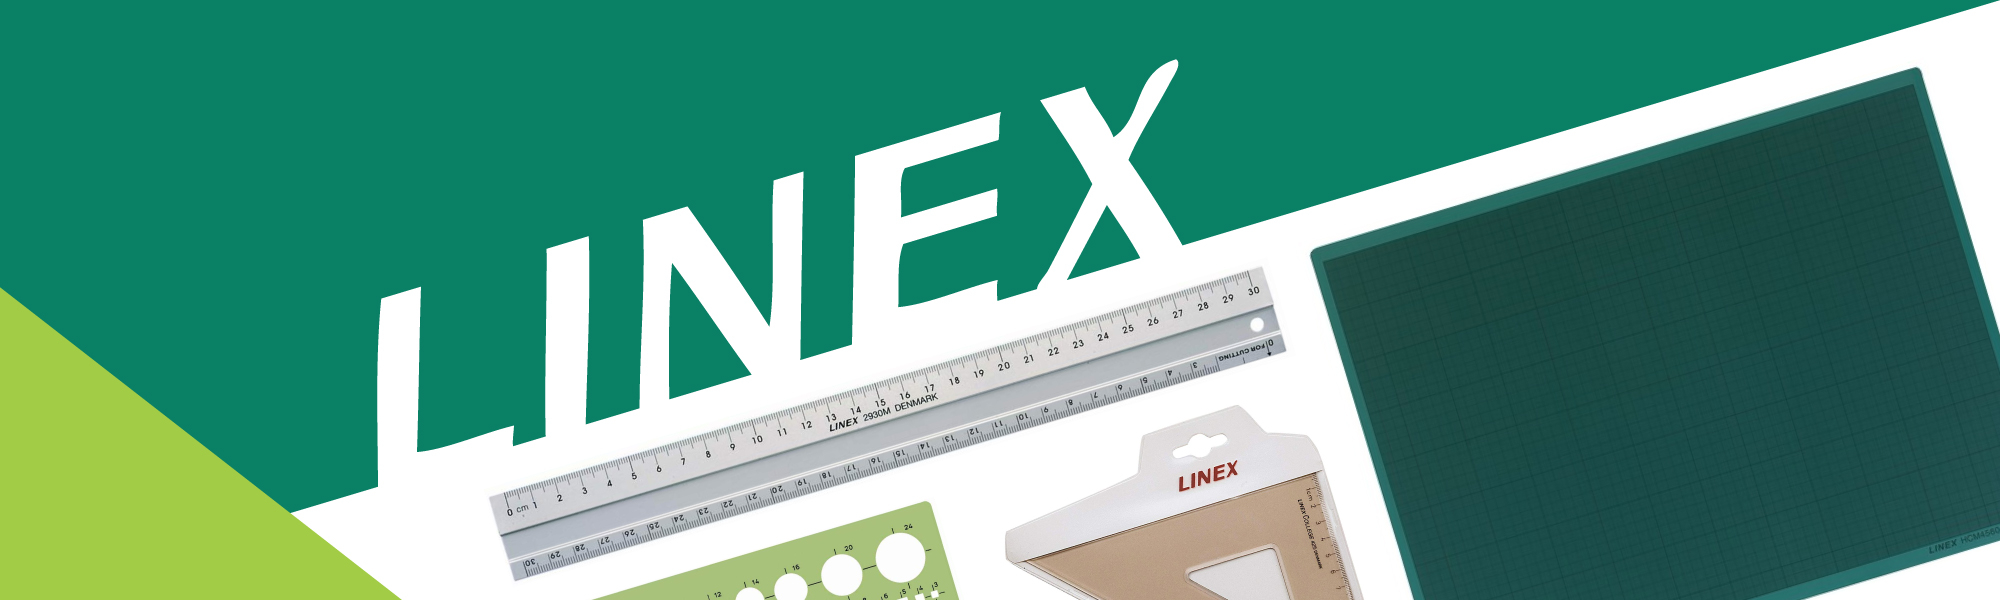 Linex 5-in-1 EASY-Kordel zum Zeichnen Aid Lineal Geodreieck Winkelmesser Kompass getöntes grün Ref LXG5IN1 